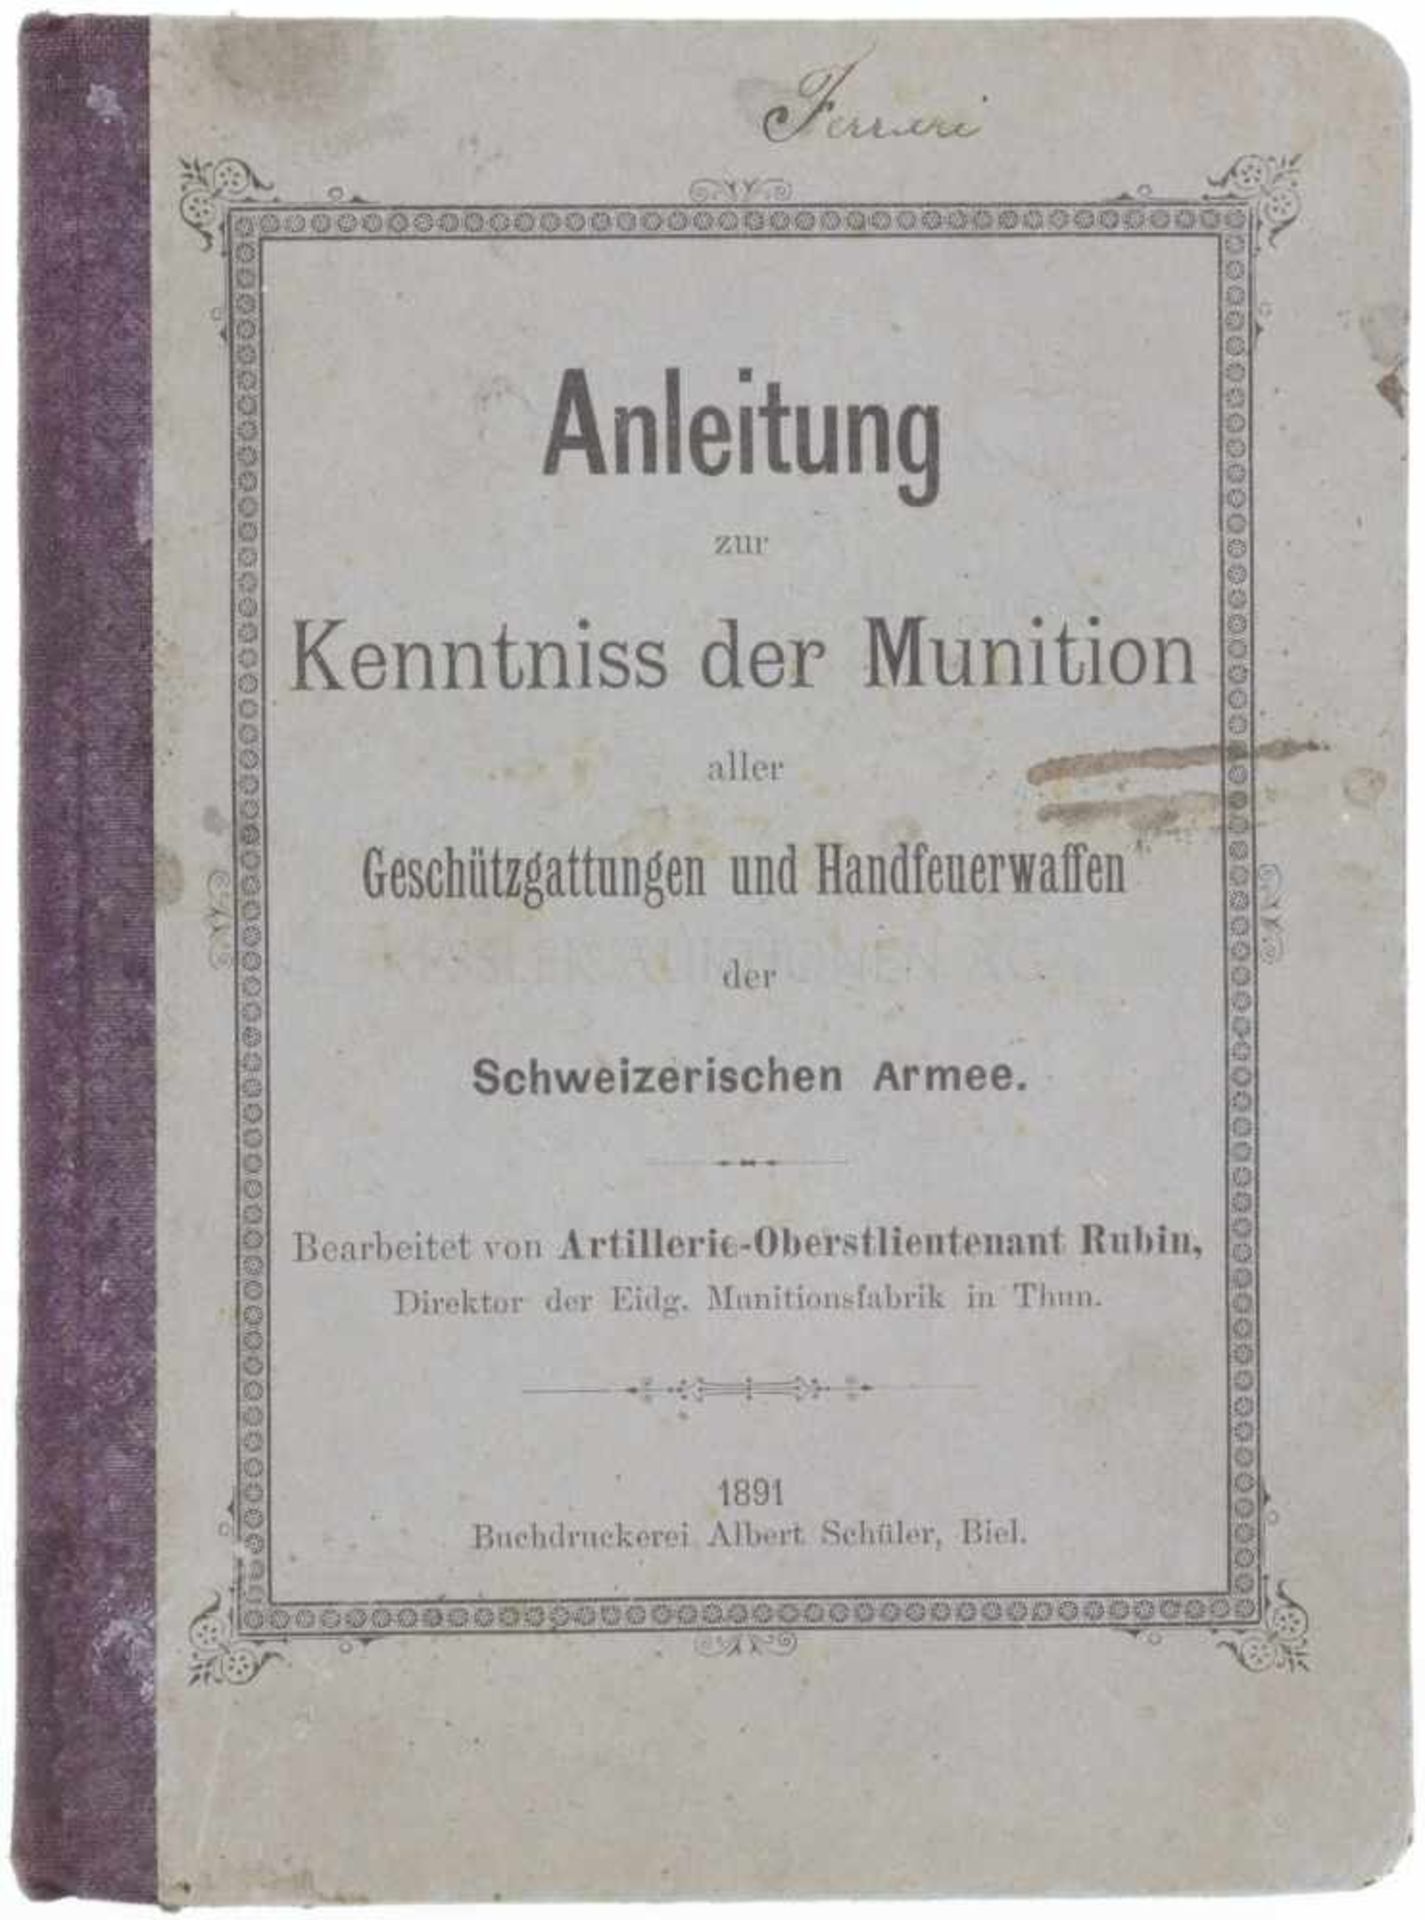 Anleitung zur Kenntnis der Munition von 1891 Die Anleitung behandelt alle Munition zu den